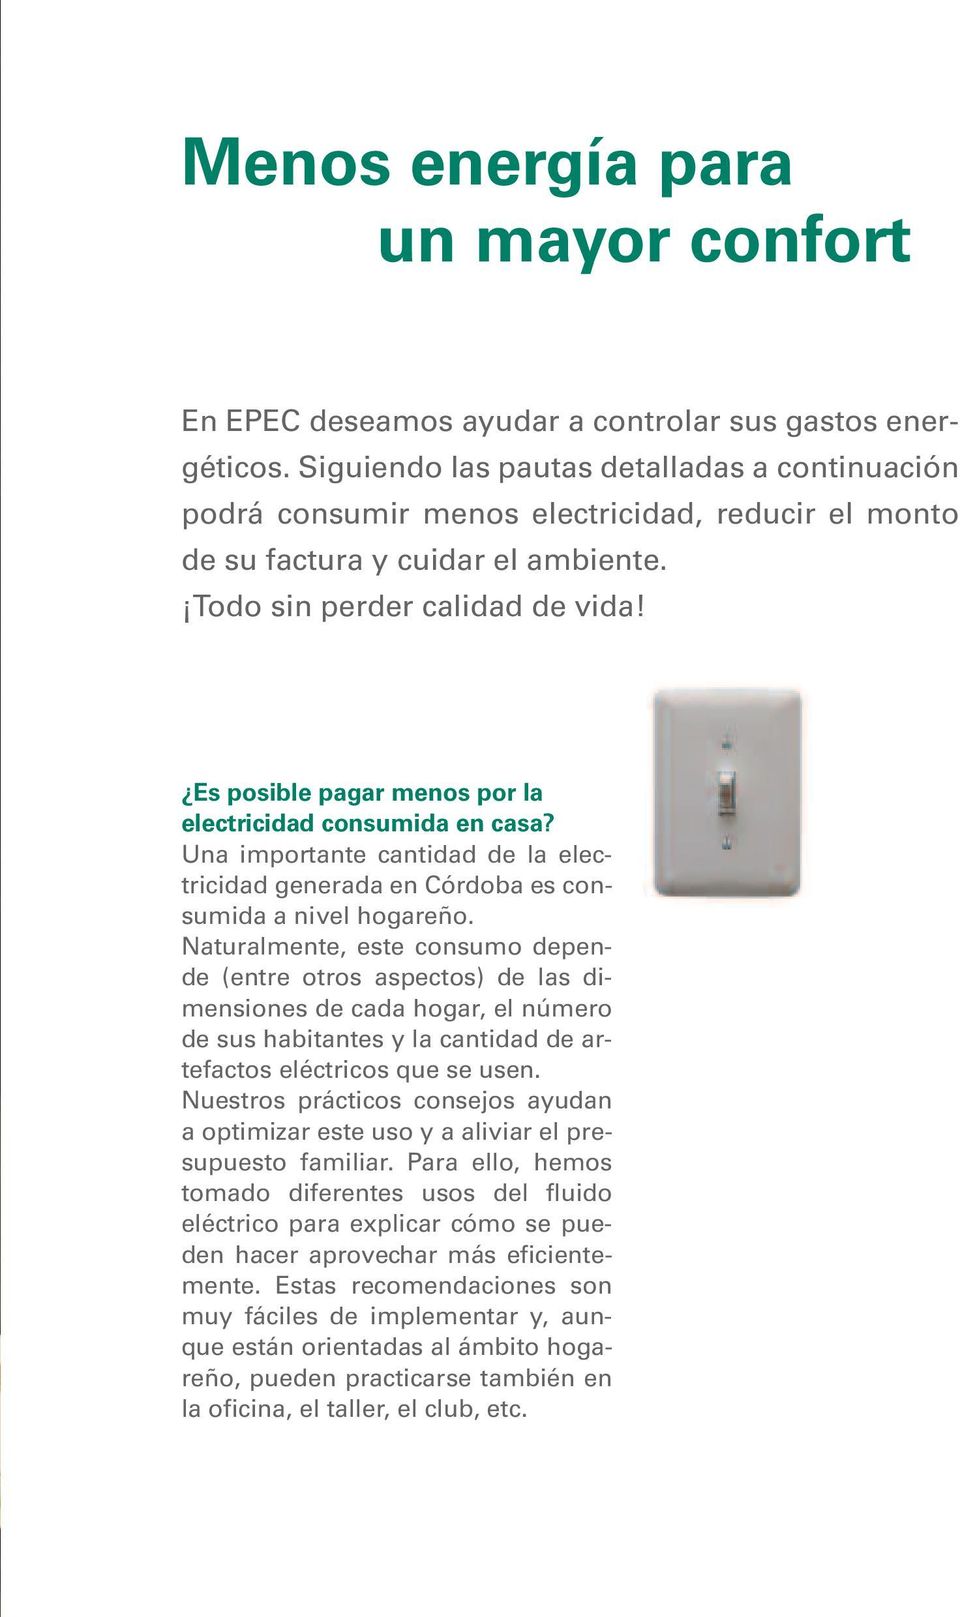 Es posible pagar menos por la electricidad consumida en casa? Una importante cantidad de la electricidad generada en Córdoba es consumida a nivel hogareño.